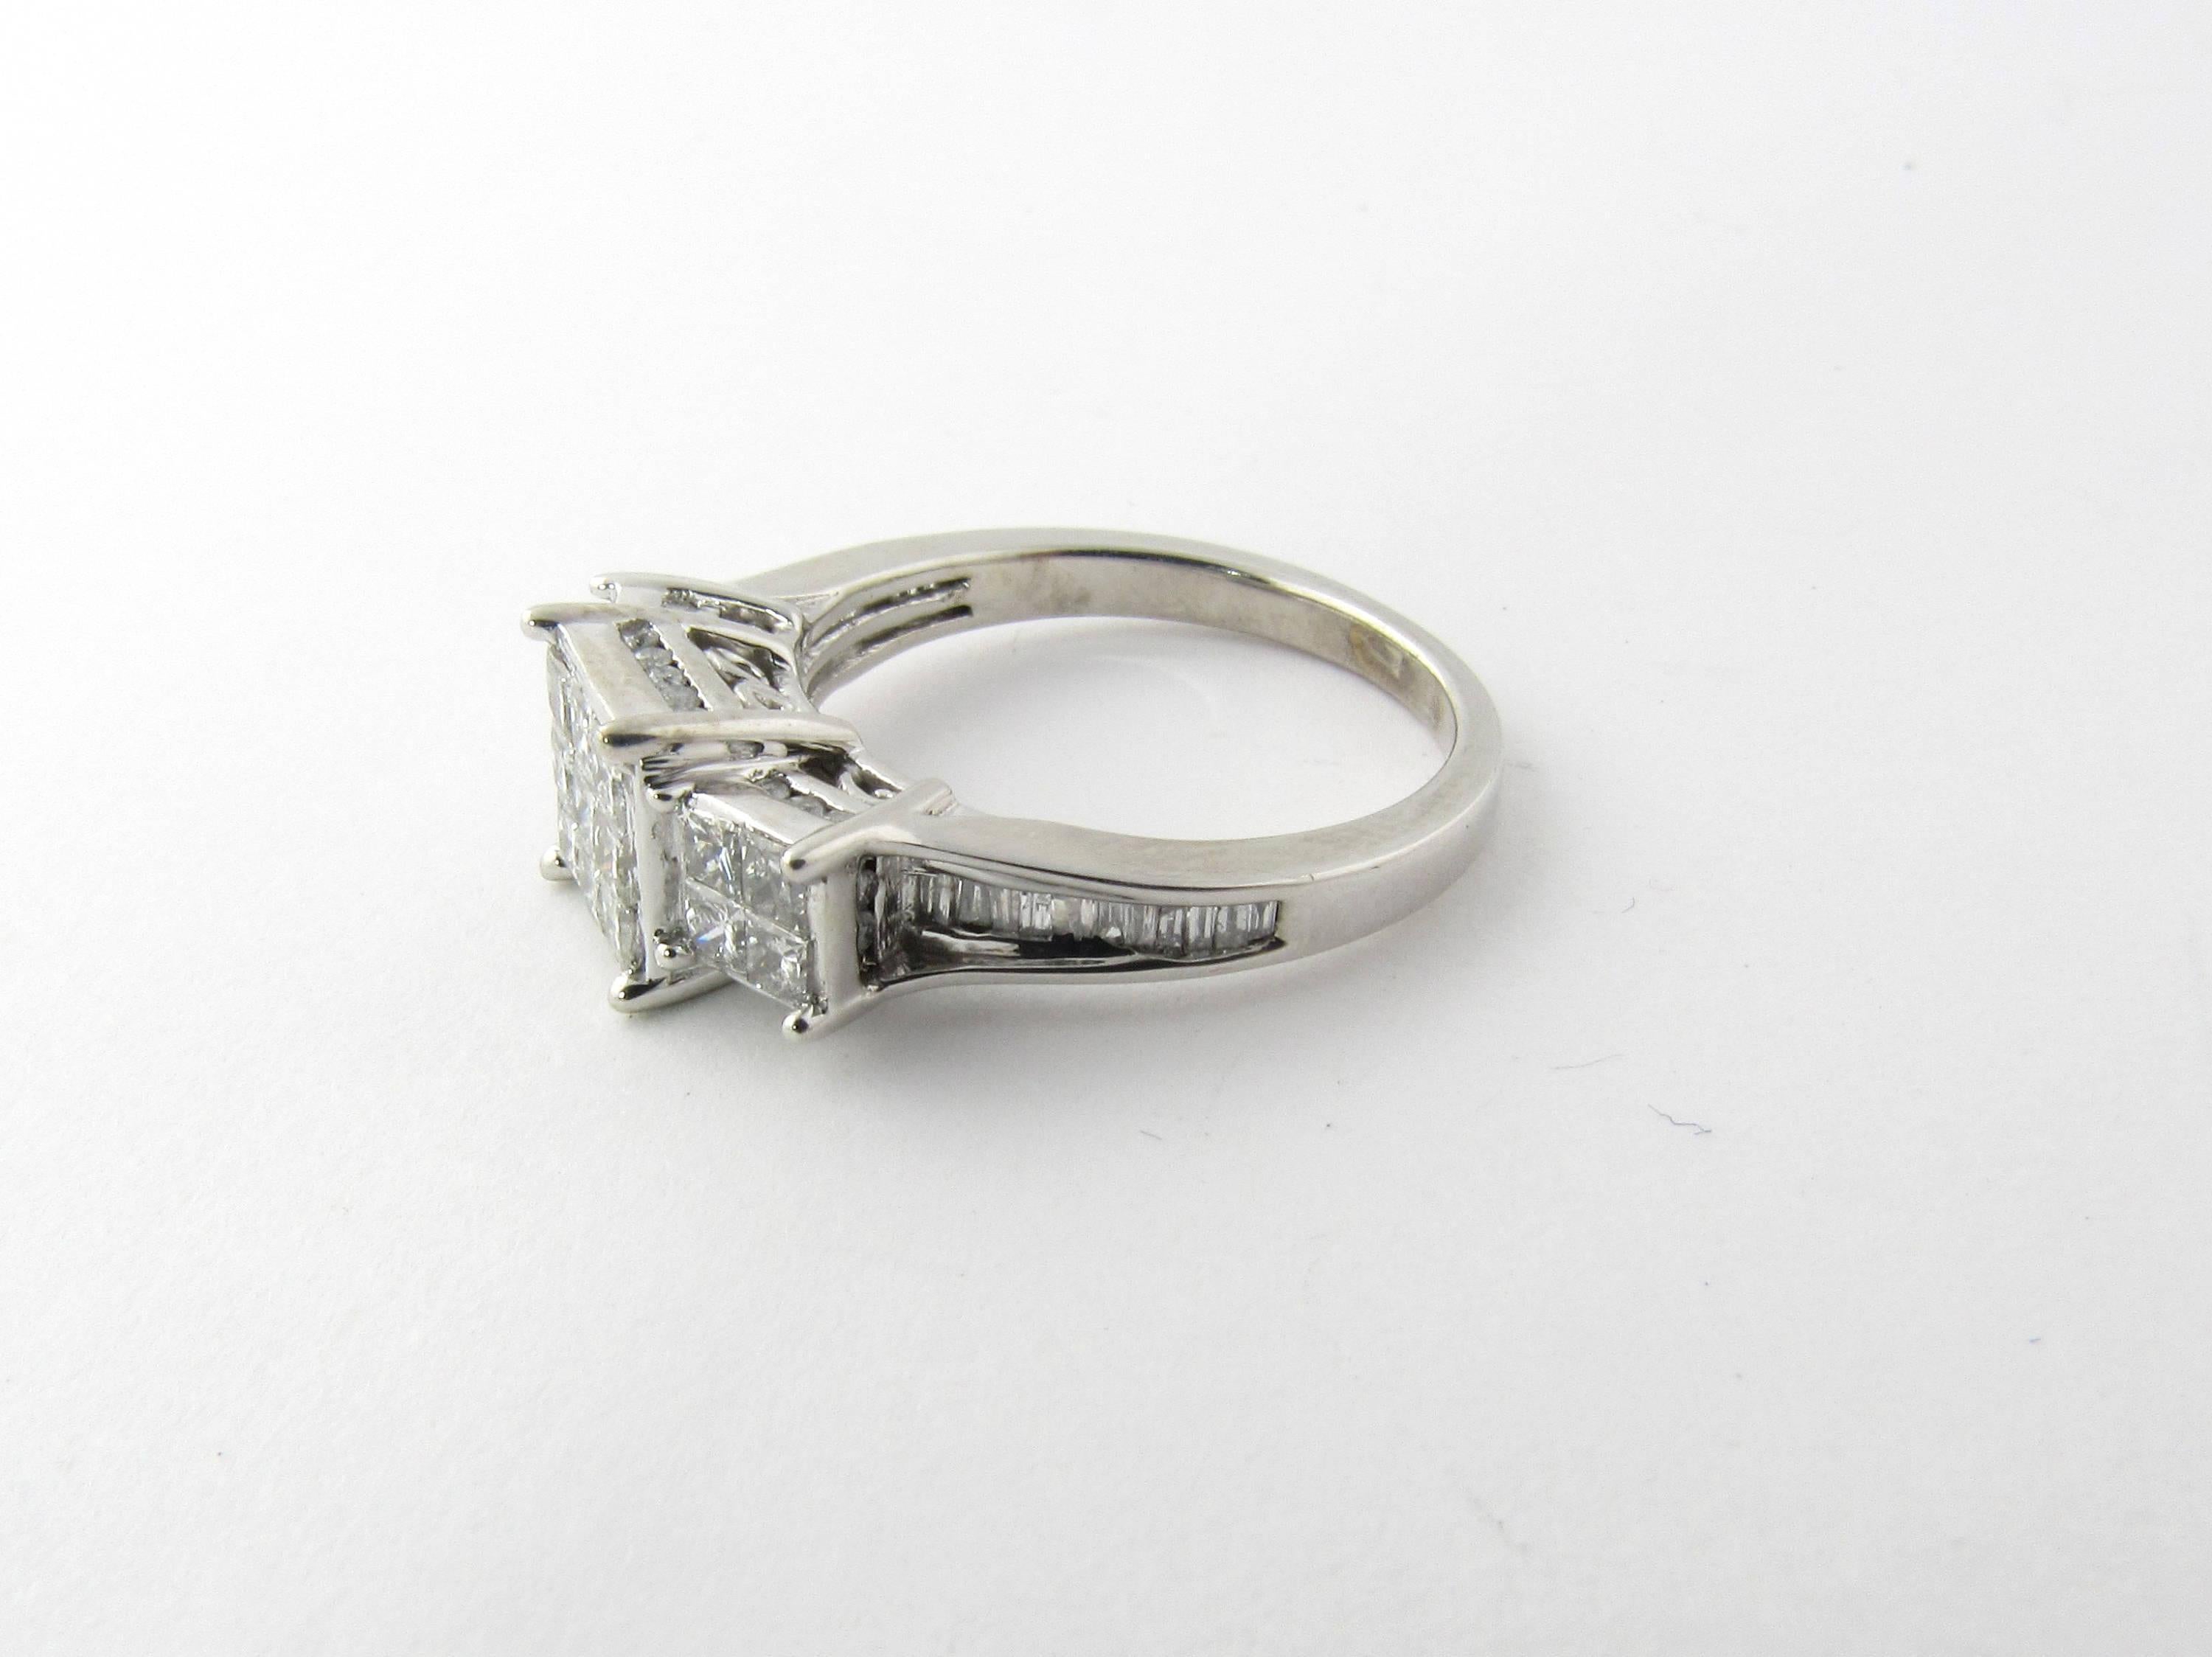 10 carat white gold diamond ring